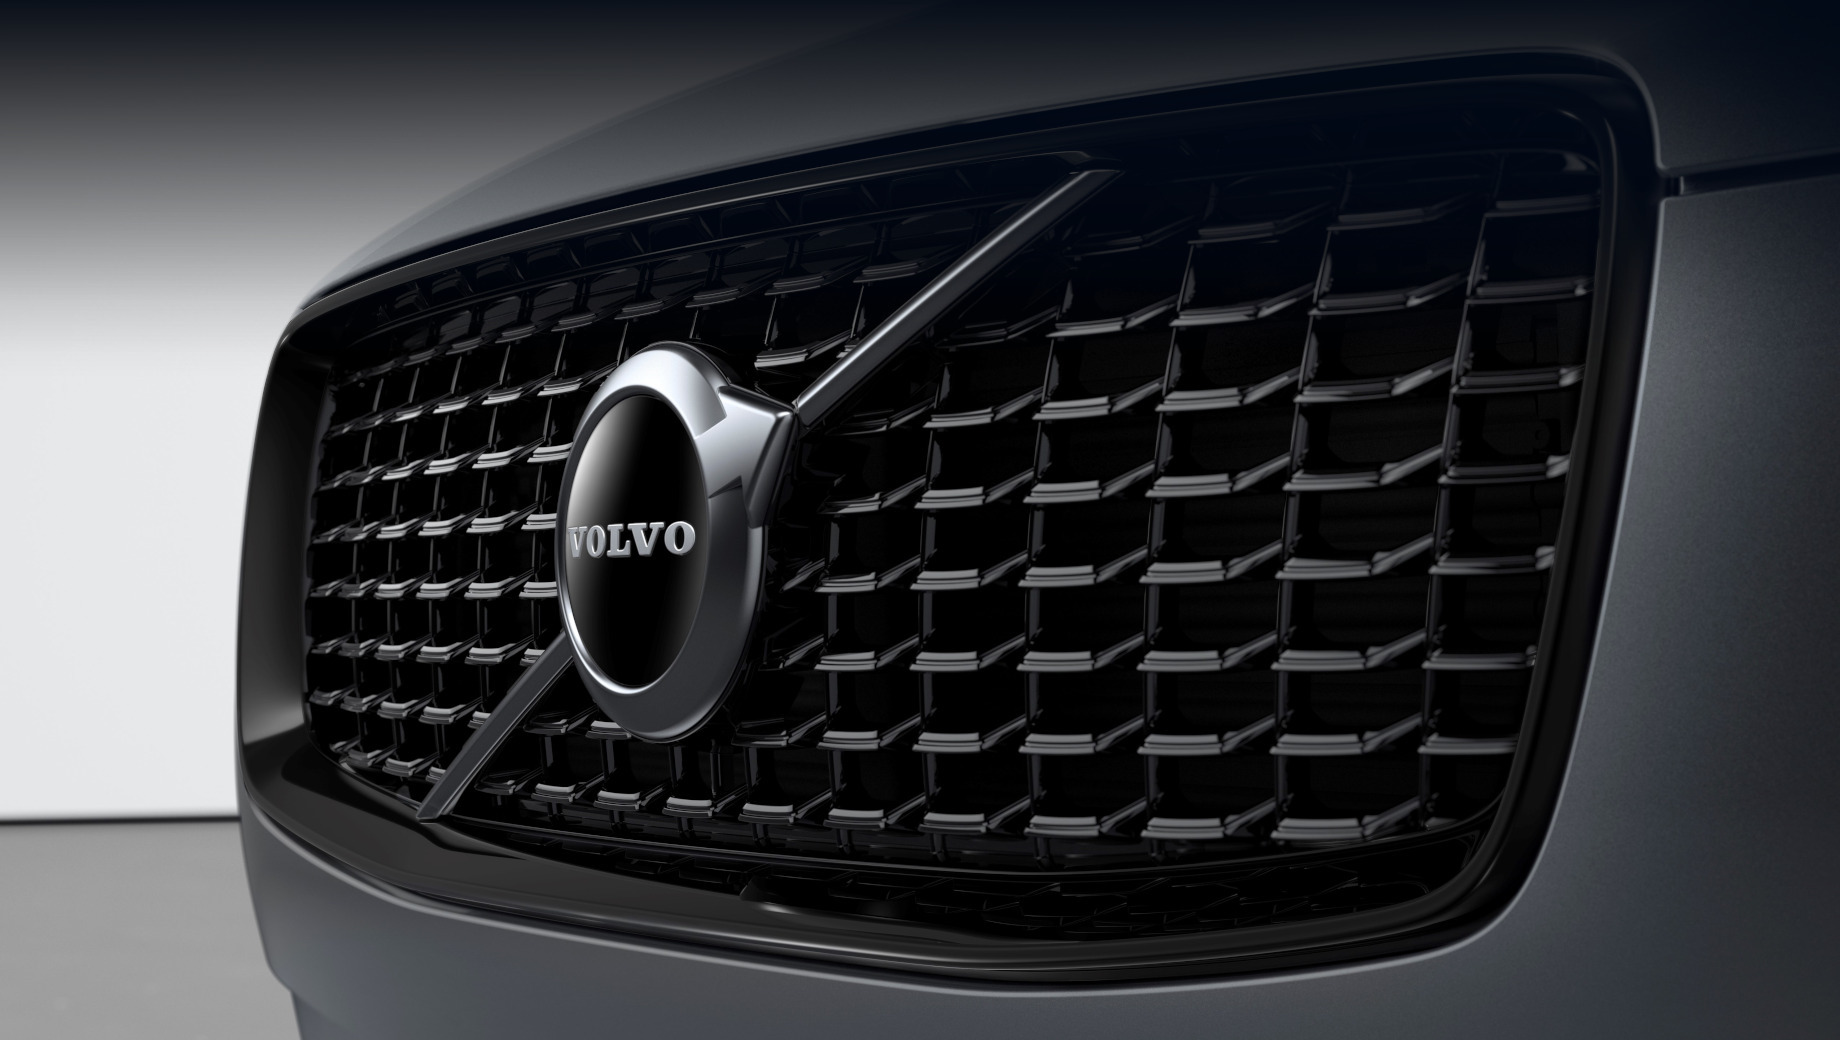 Volvo xc90,Volvo xc100. Словом Recharge, согласно проведённой прошлой осенью реформе индексов, Volvo обозначает как гибридные модели с зарядкой от сети, так и чистые электрокары. В случае с флагманским паркетником XC100 речь о втором варианте.